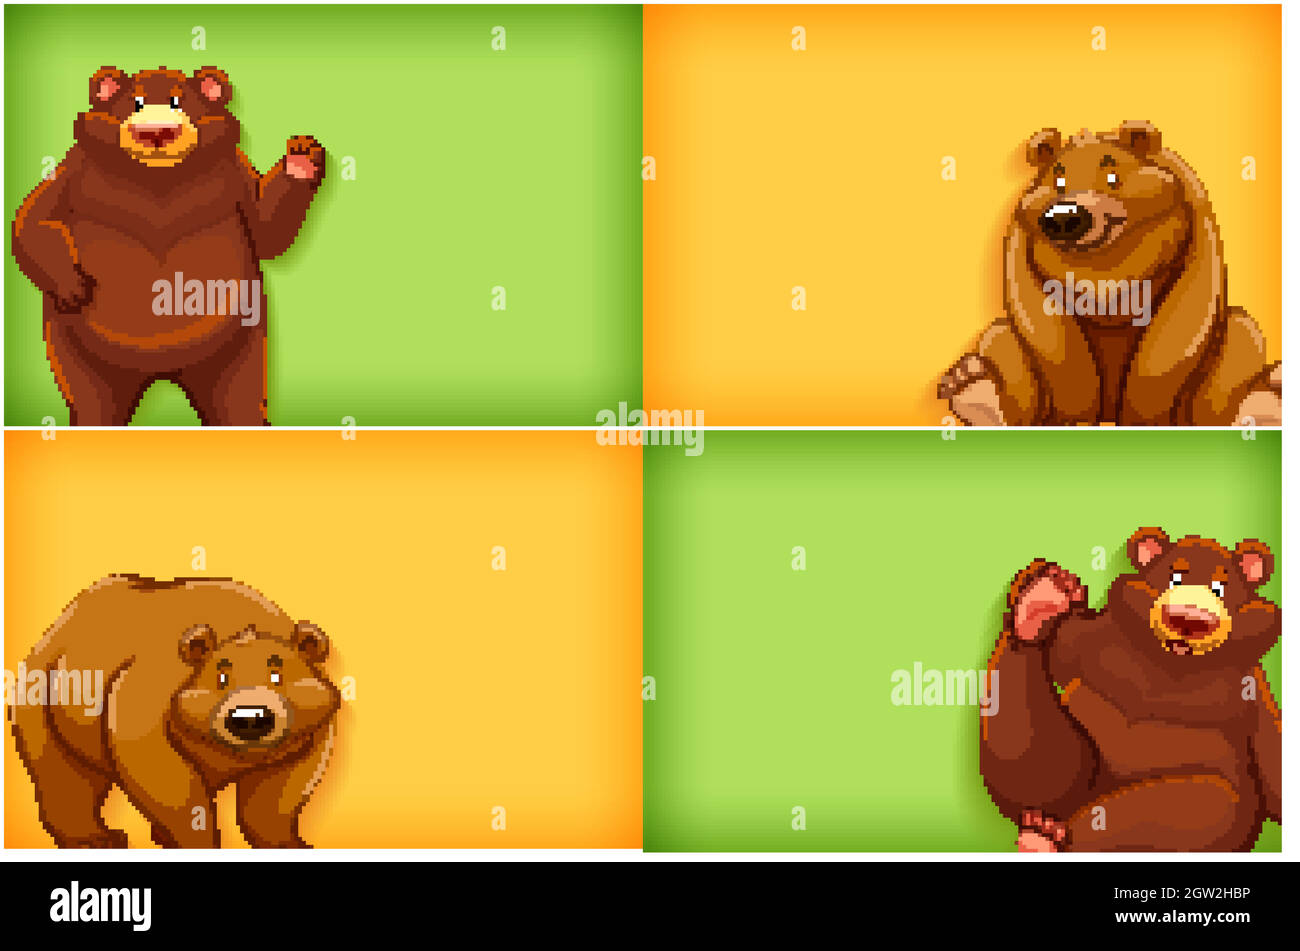 Hintergrund Schablone Design mit einfarbigen und Grizzlybären Stock Vektor